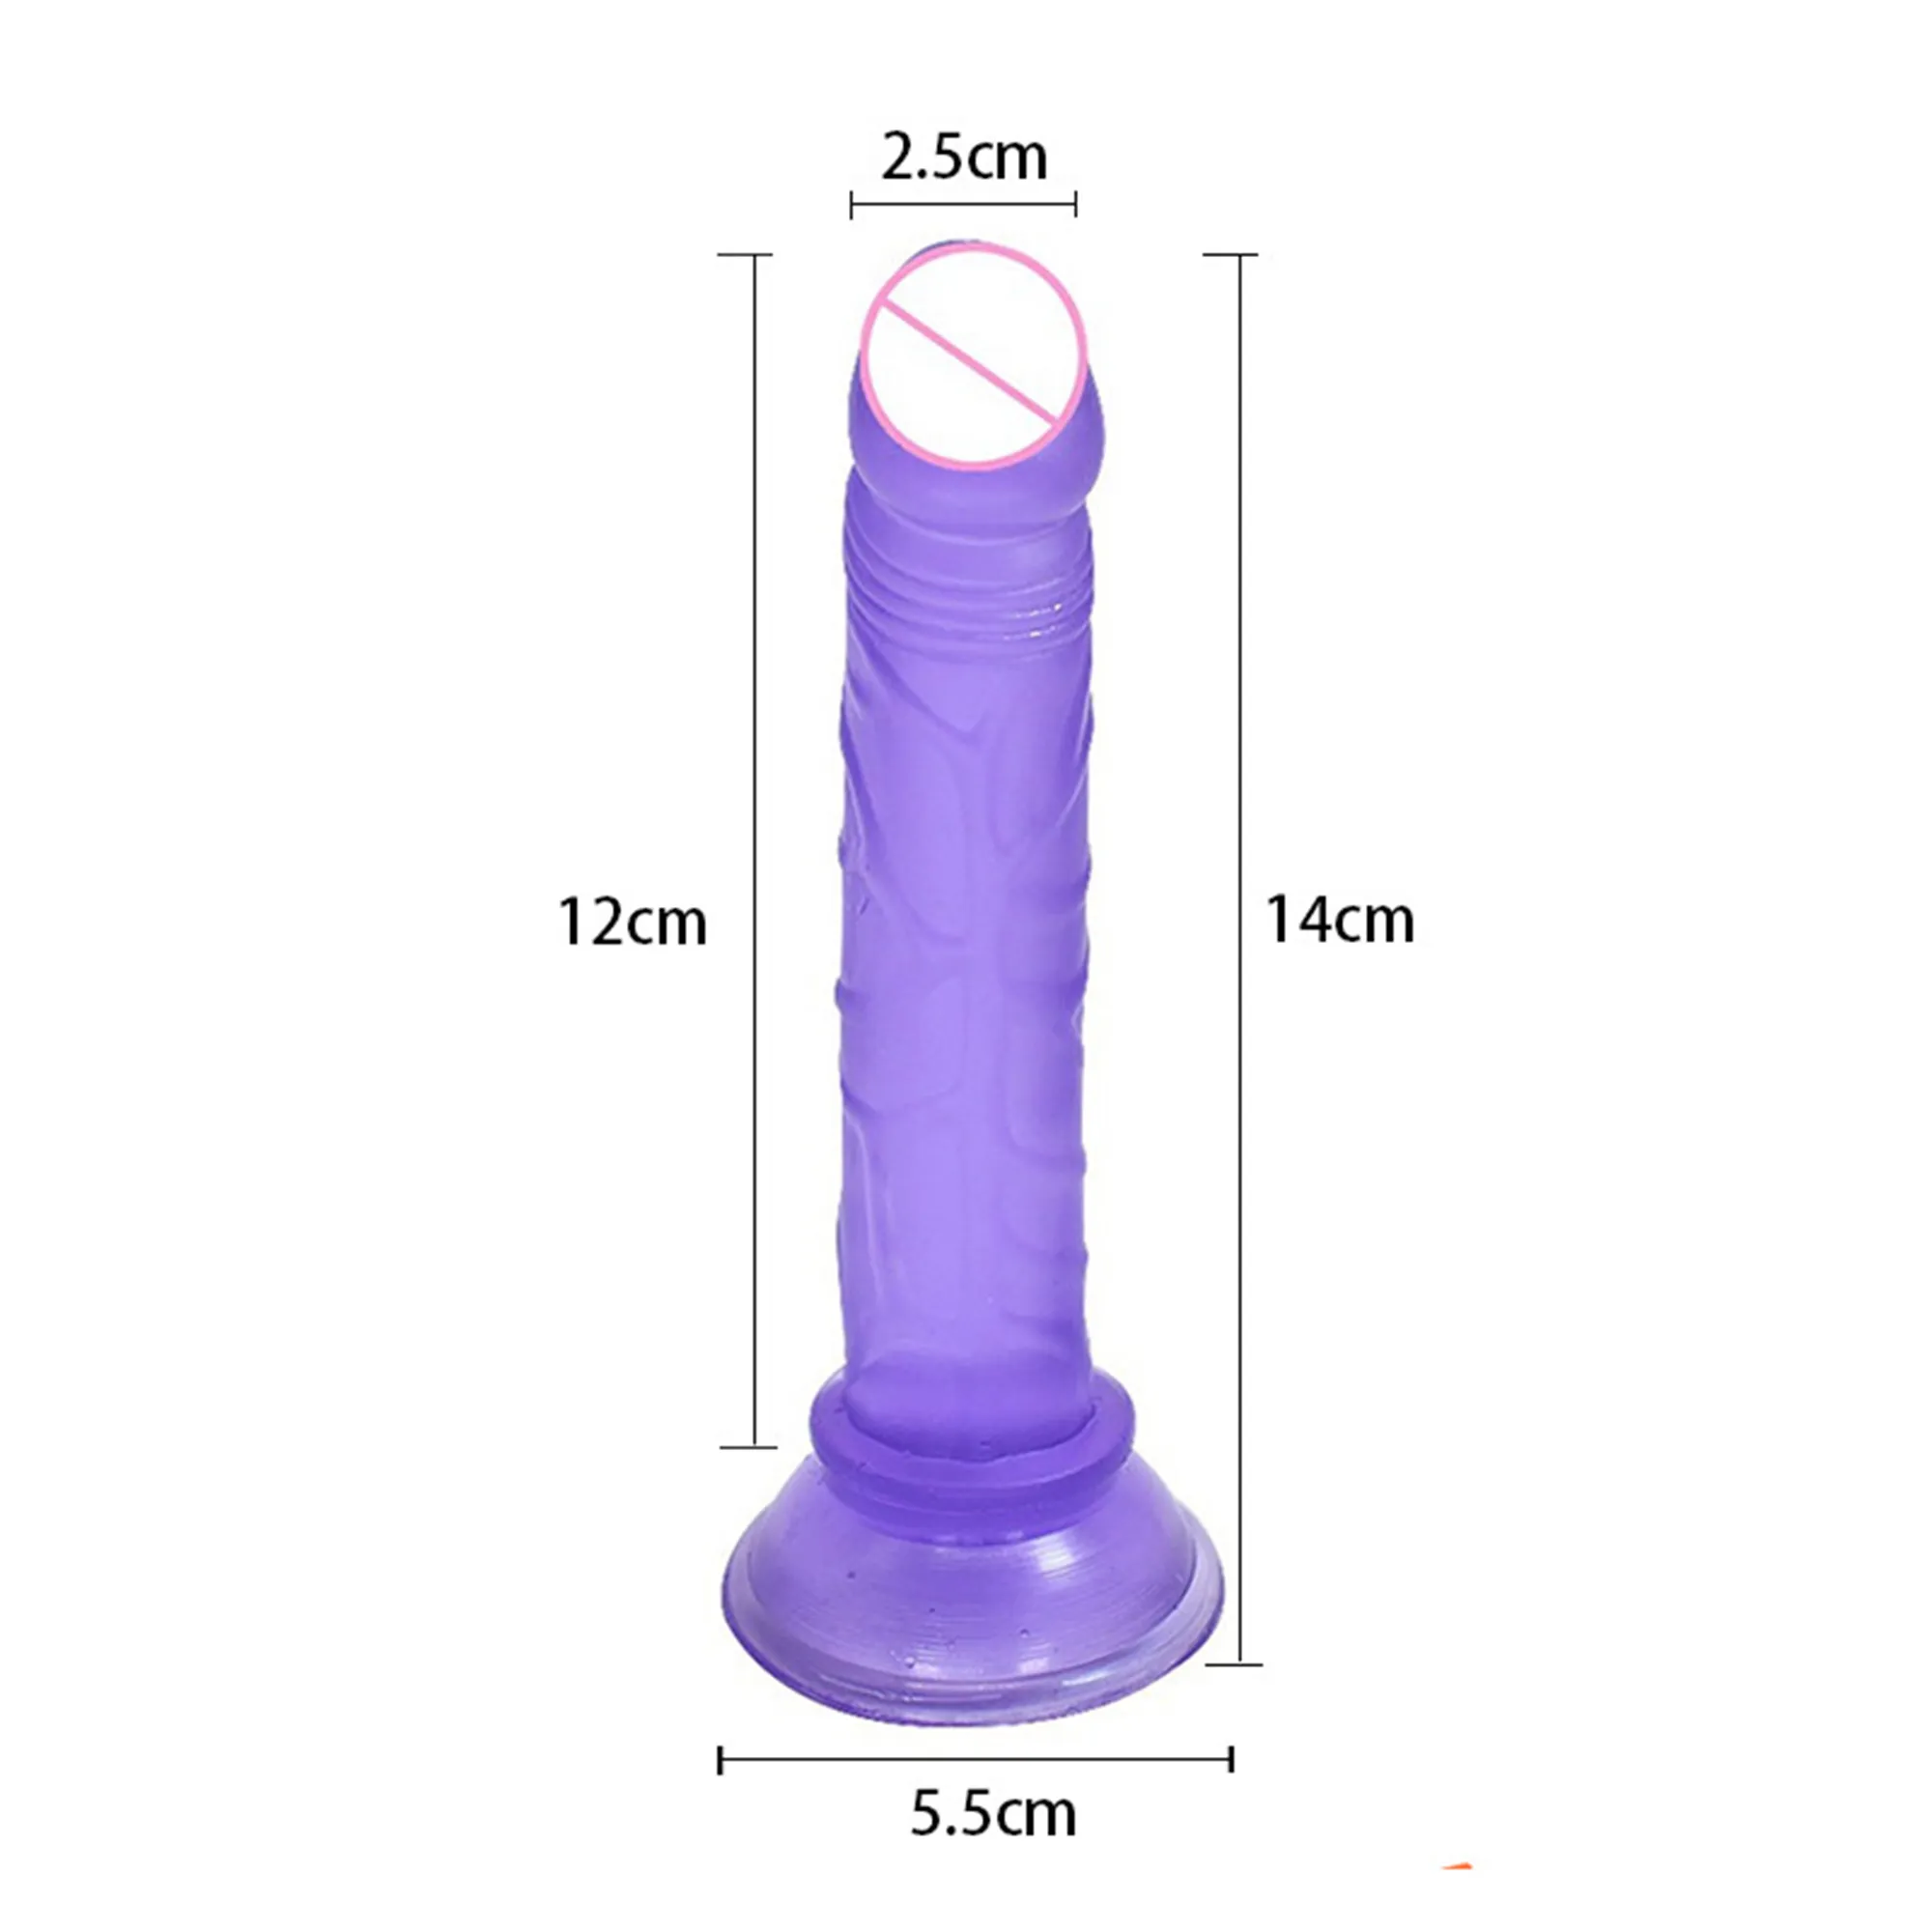 Mini godes gelée douce petite ventouse artificielle pénis vagin Plug Anal produits pour adultes jouets sexy pour femmes masturbateur